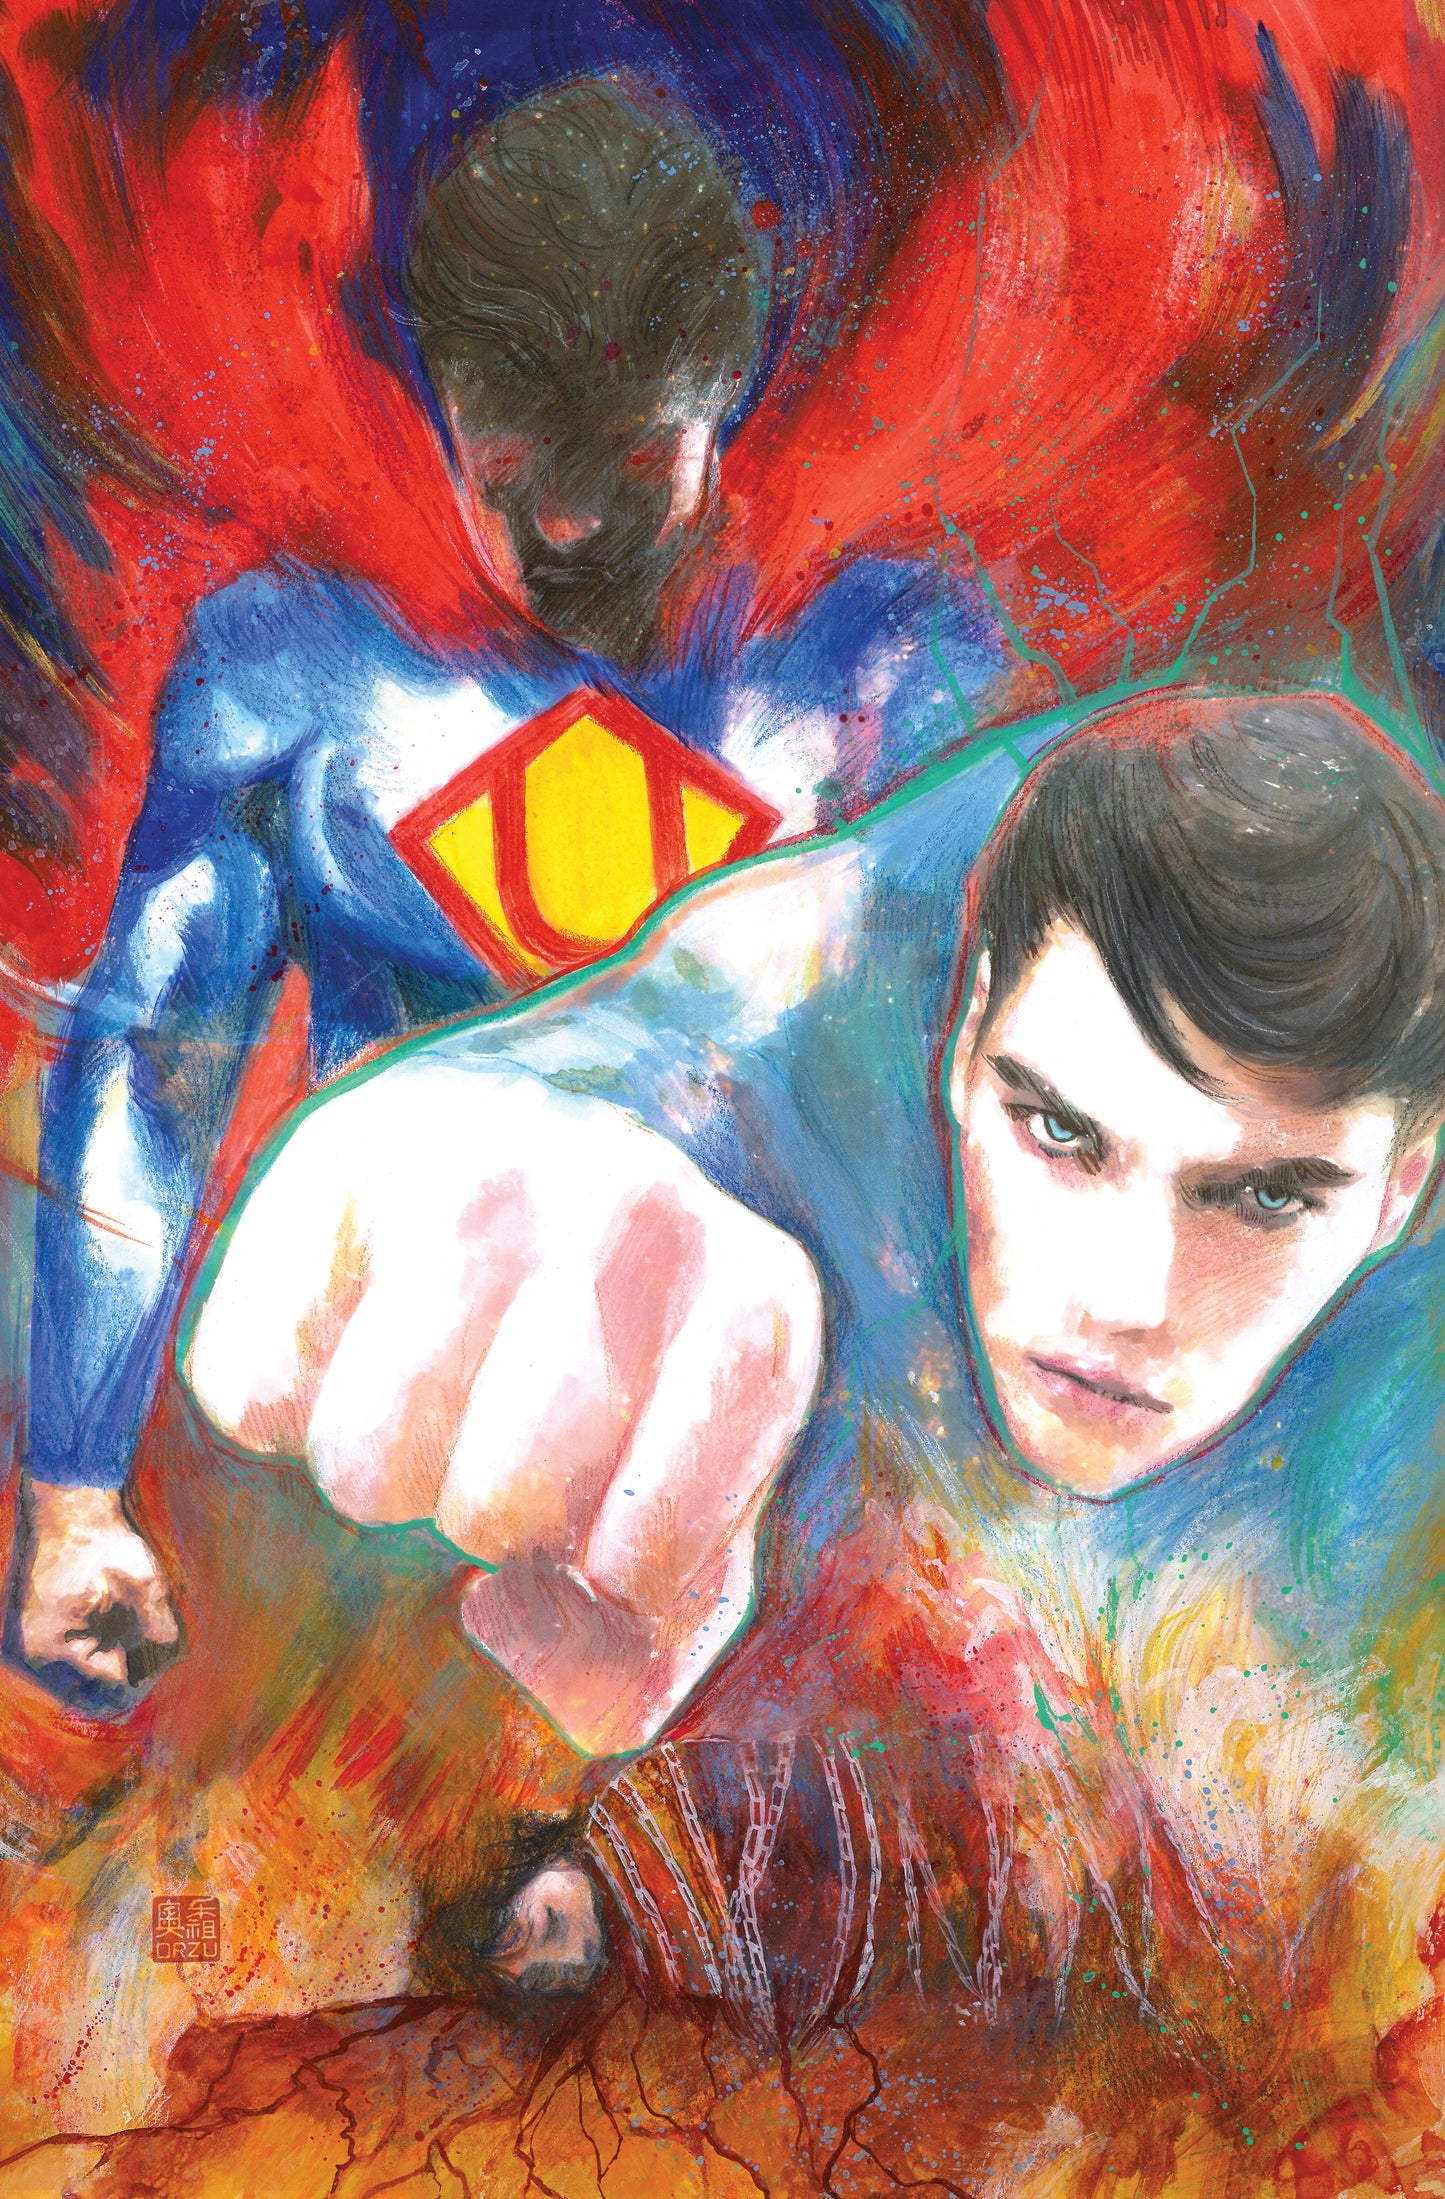 ADVENTURES OF SUPERMAN: JON KENT